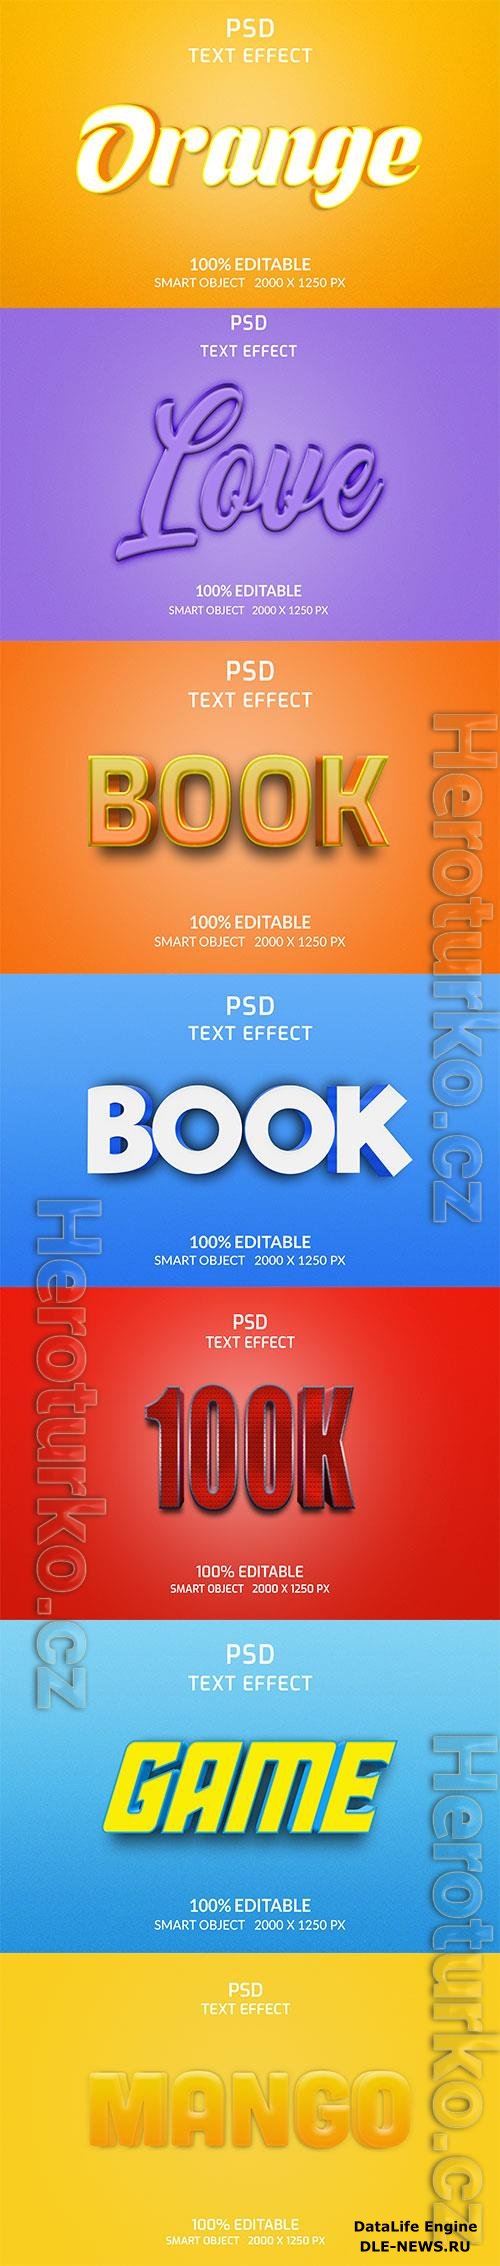 Psd text effect set vol 166